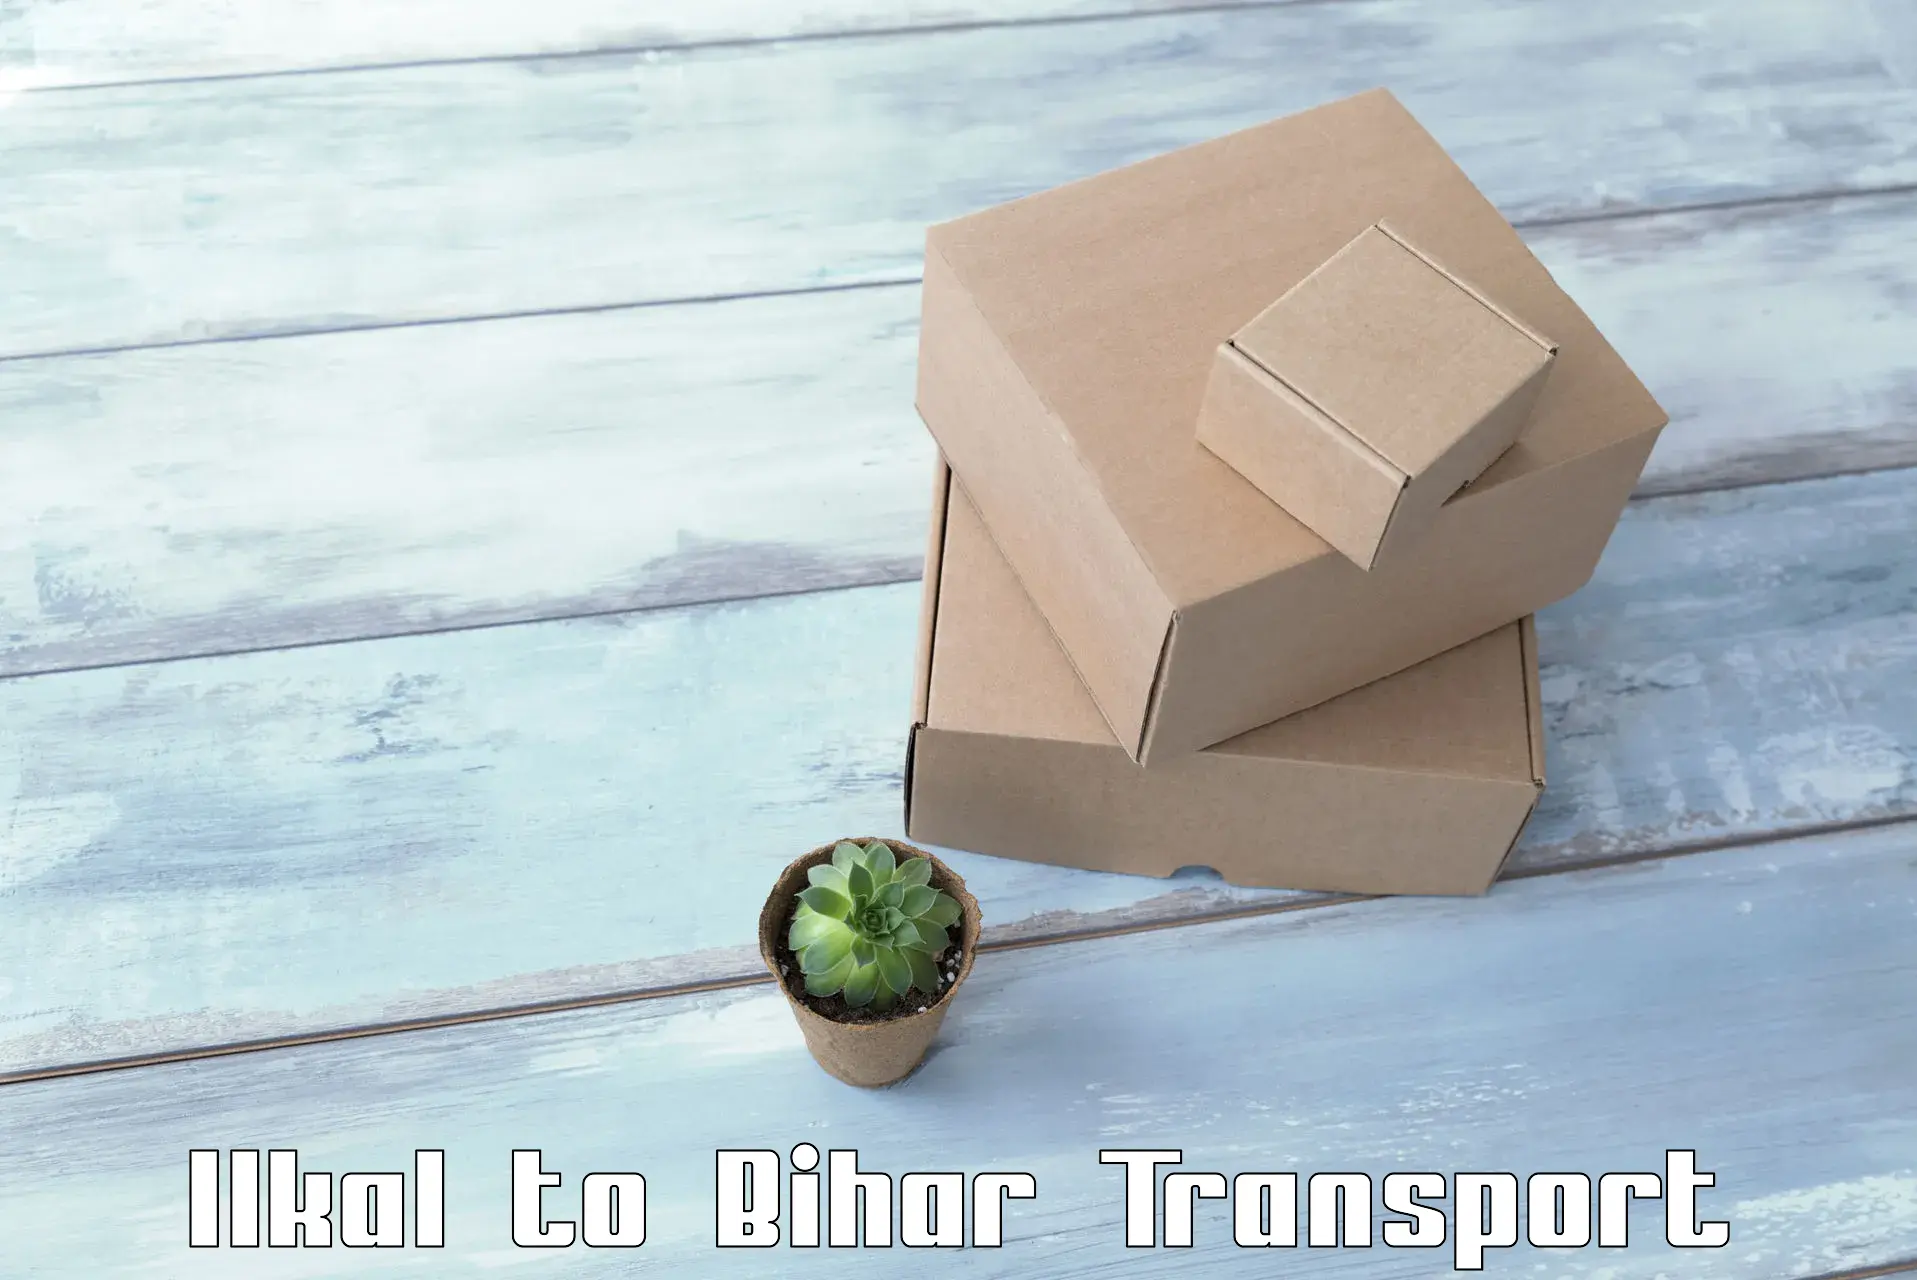 Nearby transport service Ilkal to Bihar